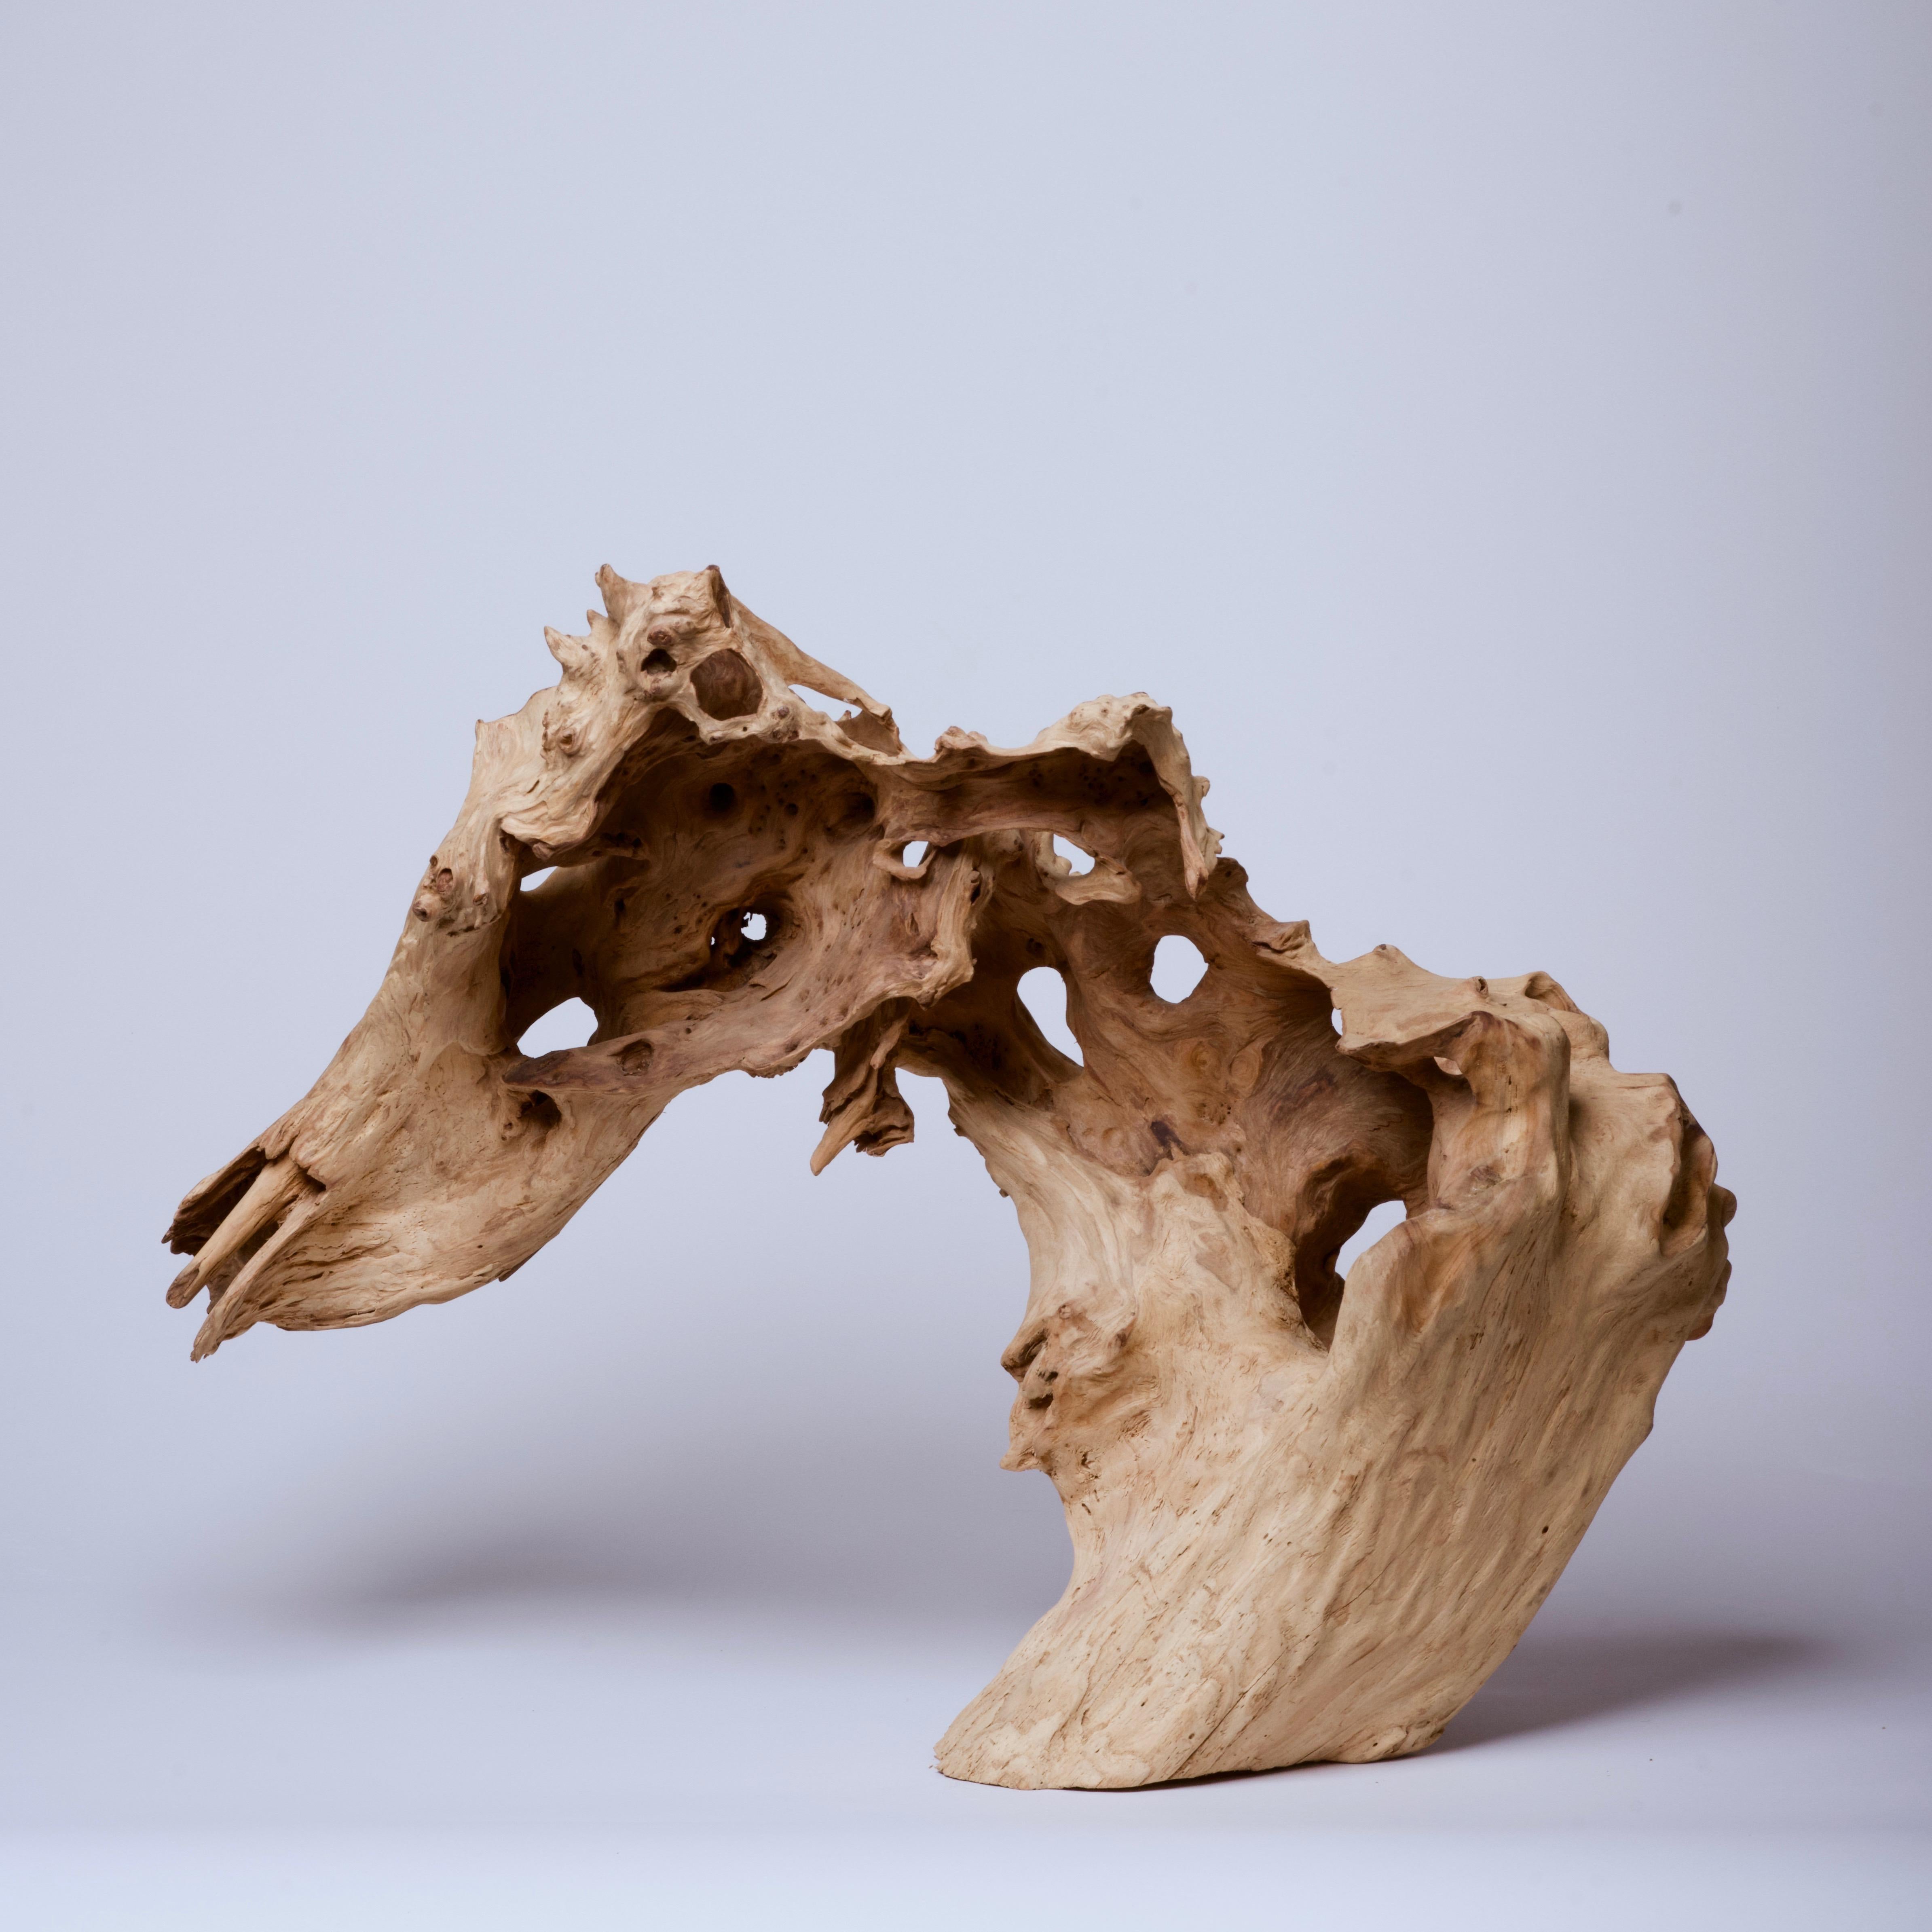 Natural wood sculpture reminiscent of a wild boar 12” x 30” x 22 1/2”.
An organic sculpture for the modern scholar's desk.